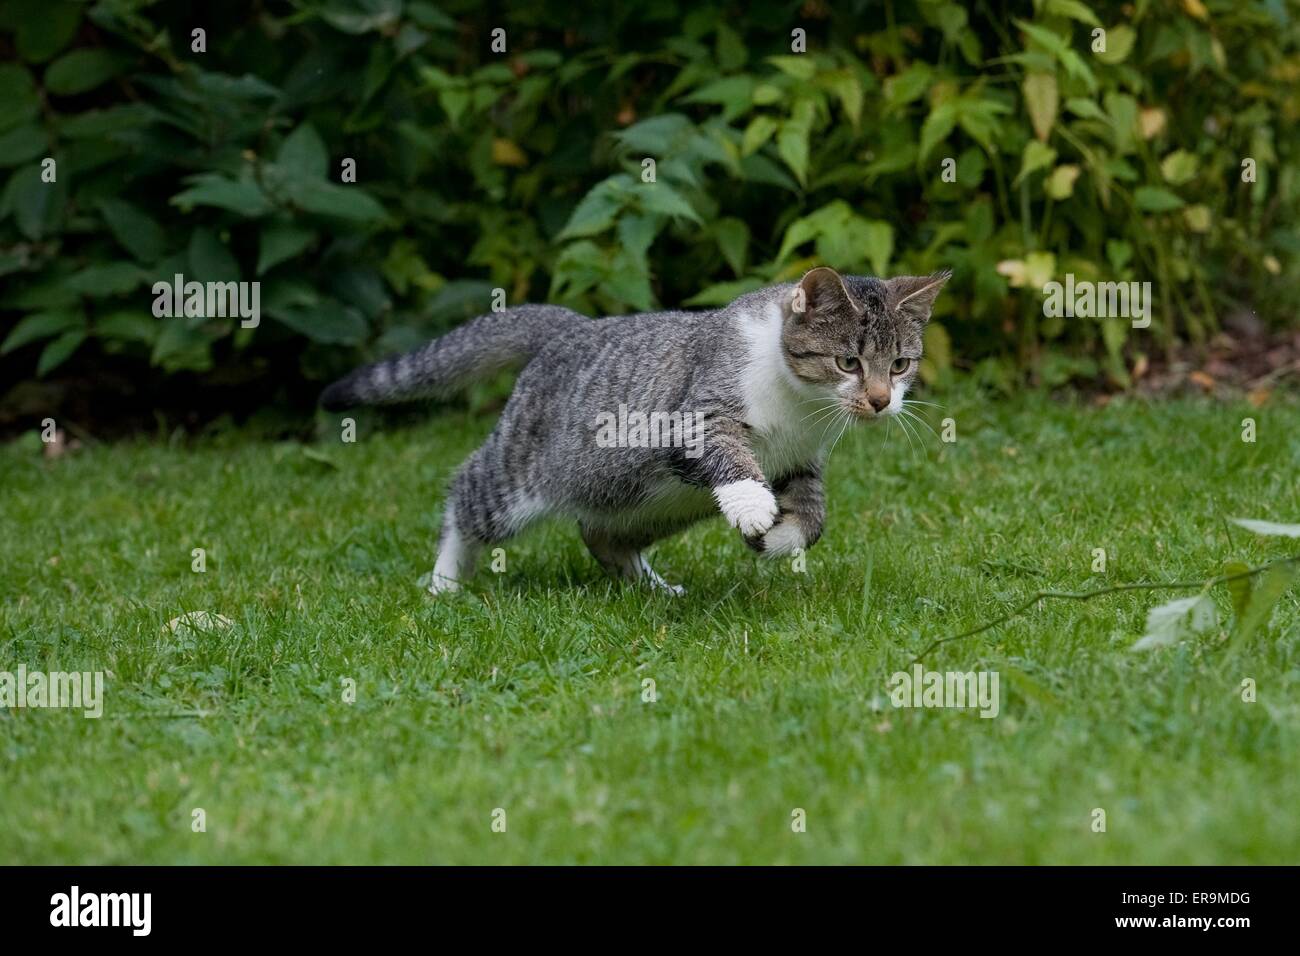 running domestic cat Stock Photo